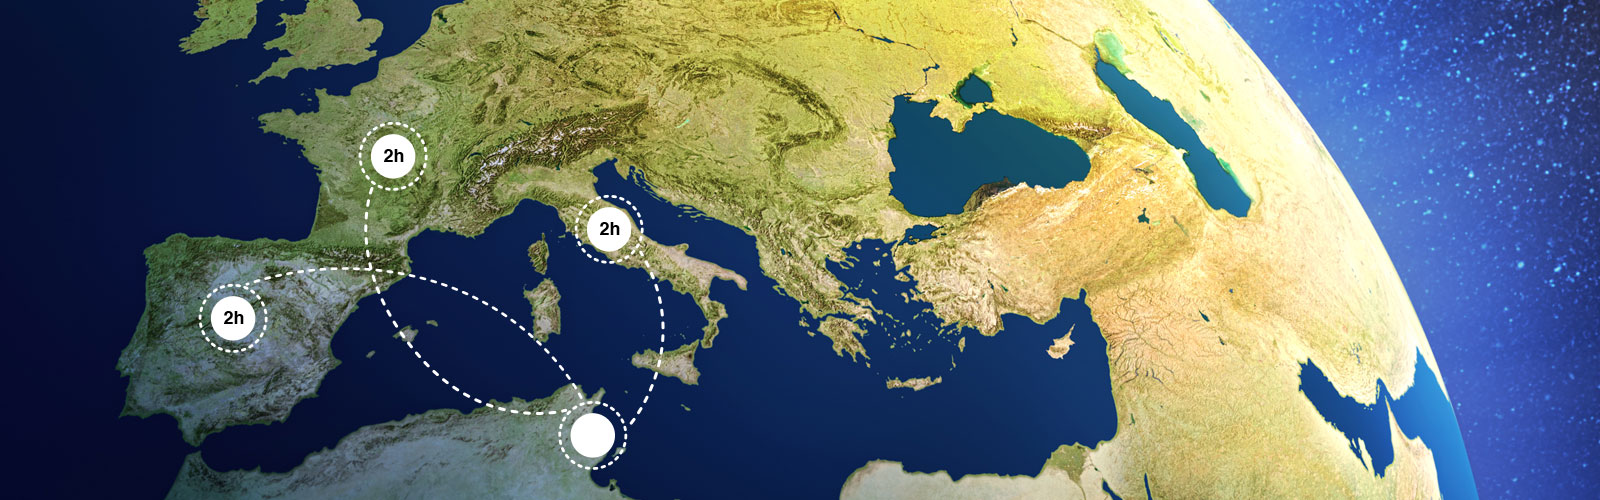 Situé à 15 minutes de l'aéroport international de Monastir, nous livrons l'europe en 5 jours